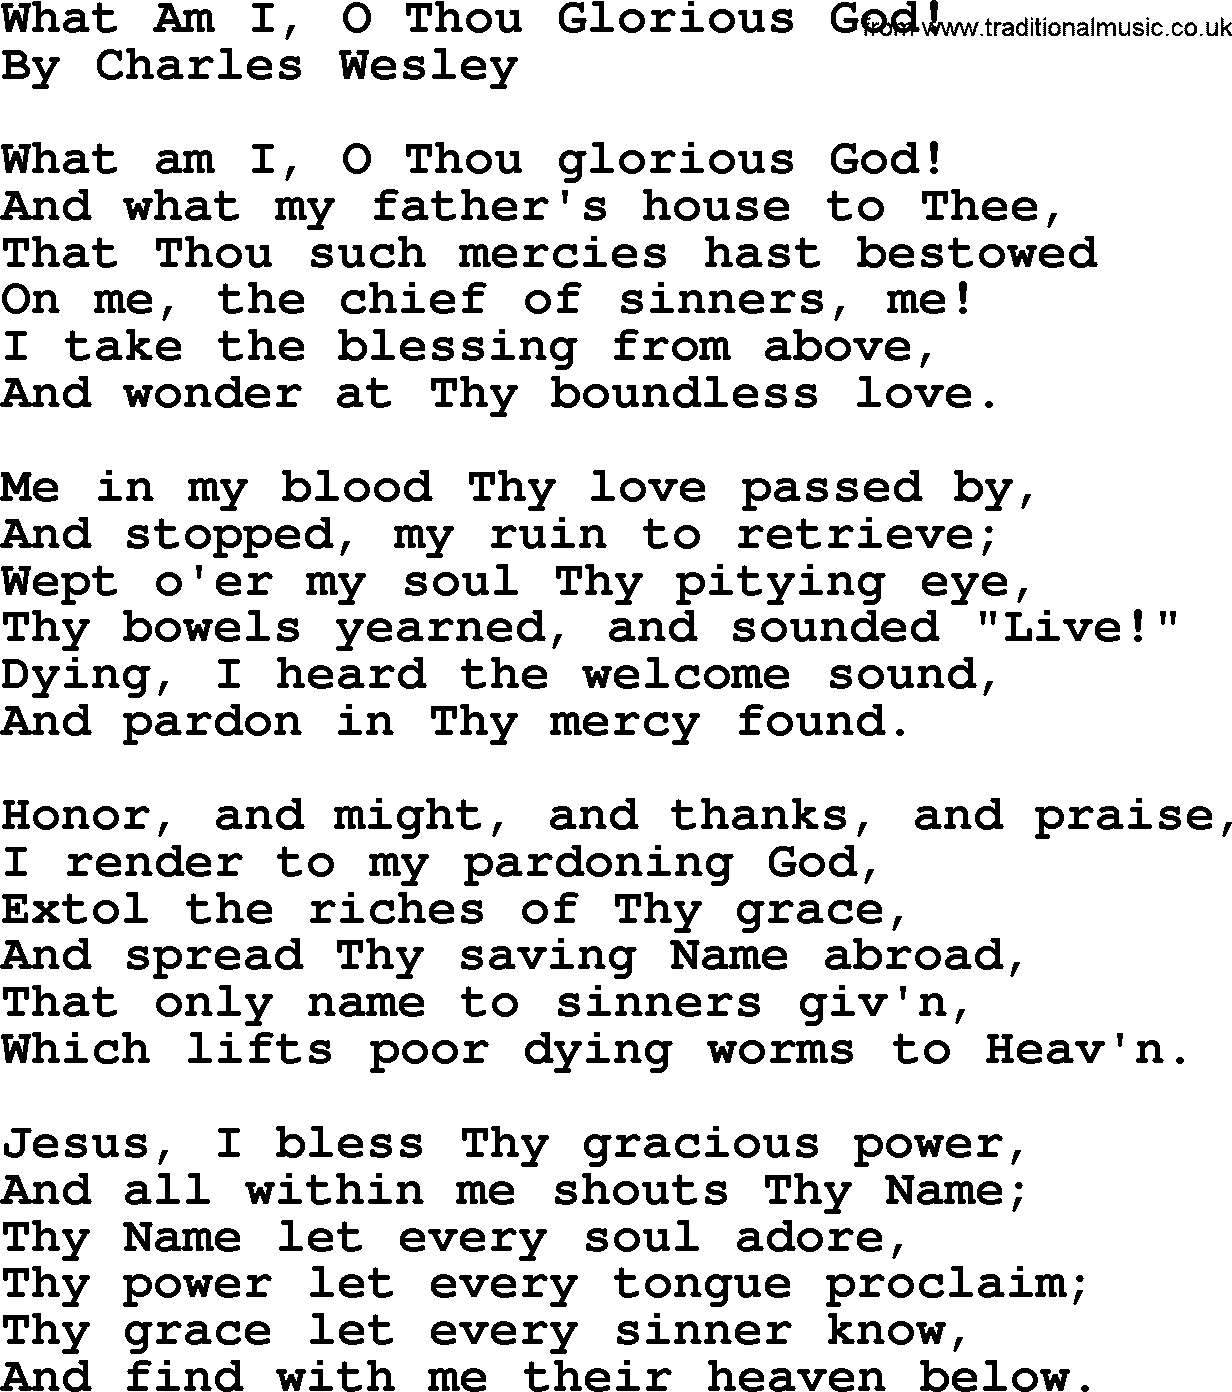 Charles Wesley hymn: What Am I, O Thou Glorious God!, lyrics